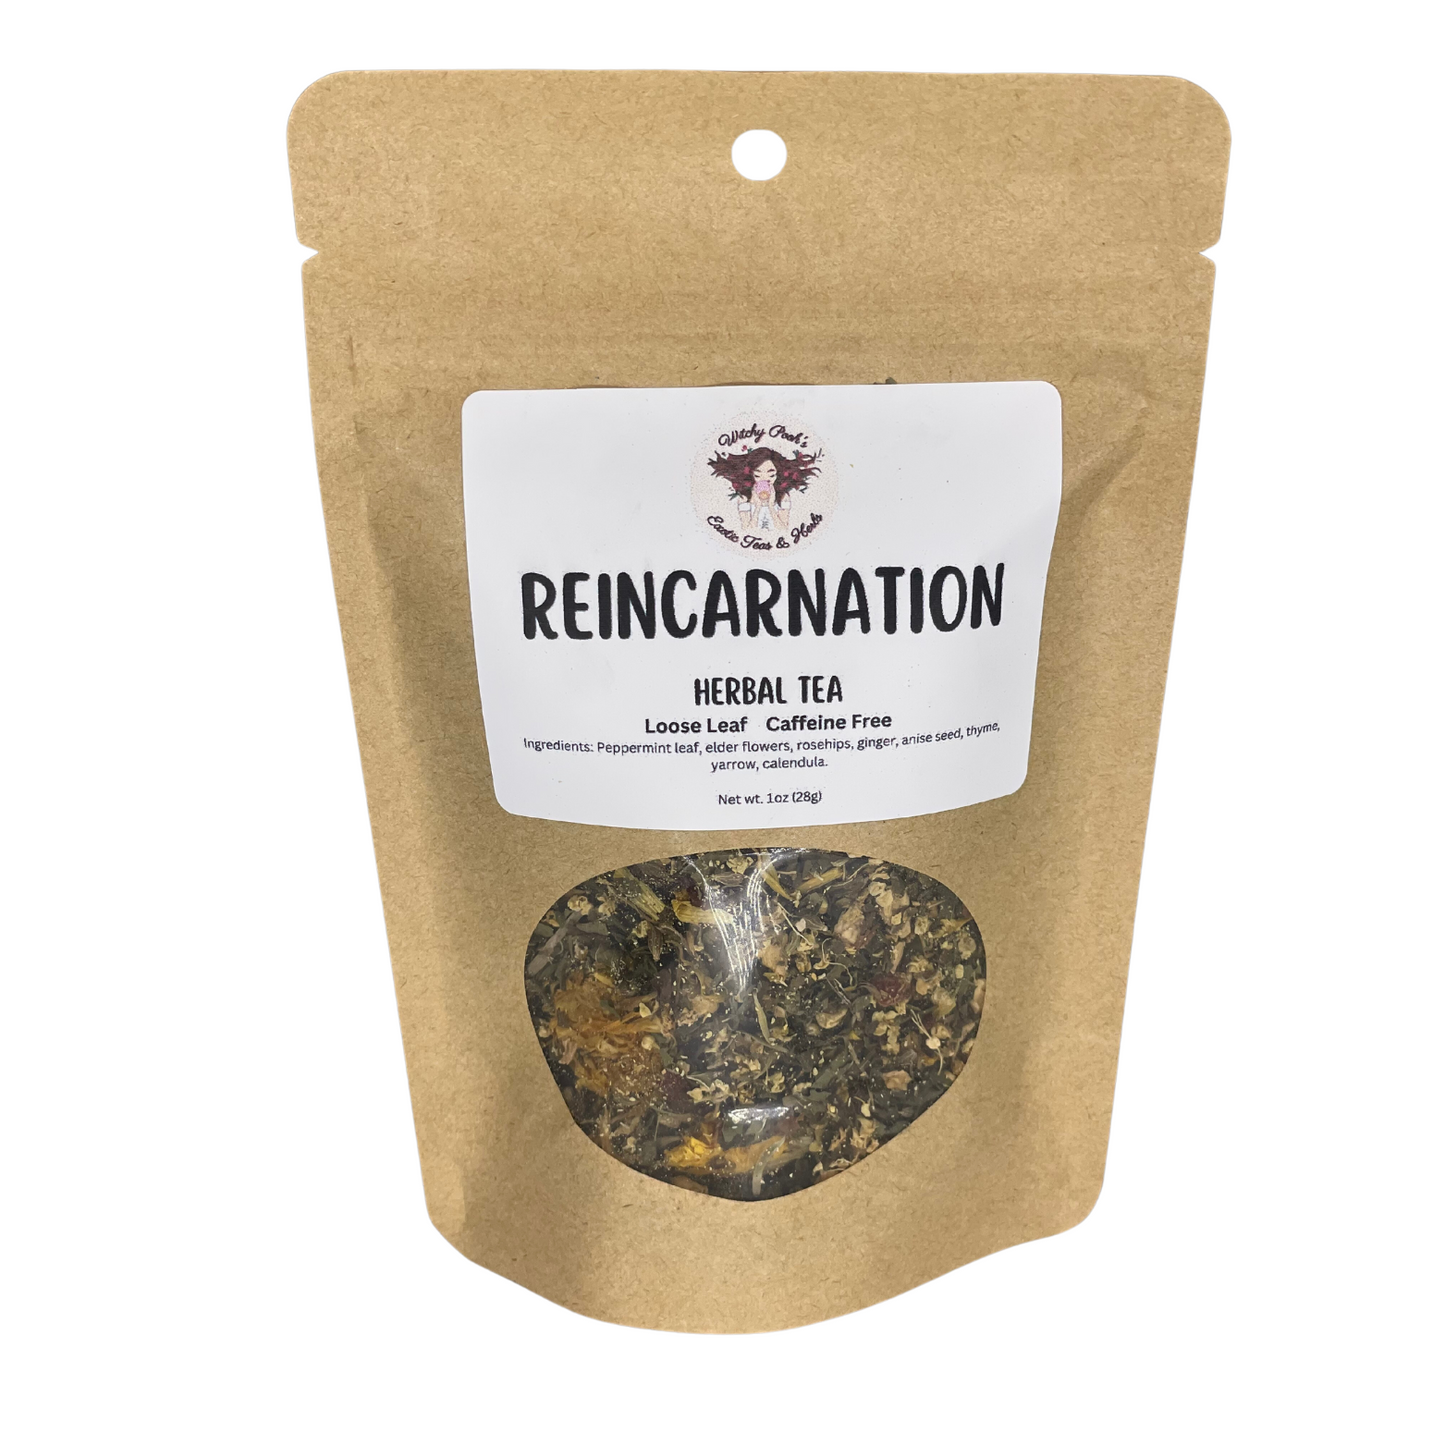 Reincarnation Tea, Herbal Tea, Loose Leaf Tea, Caffeine Free Tea, Functional Tea